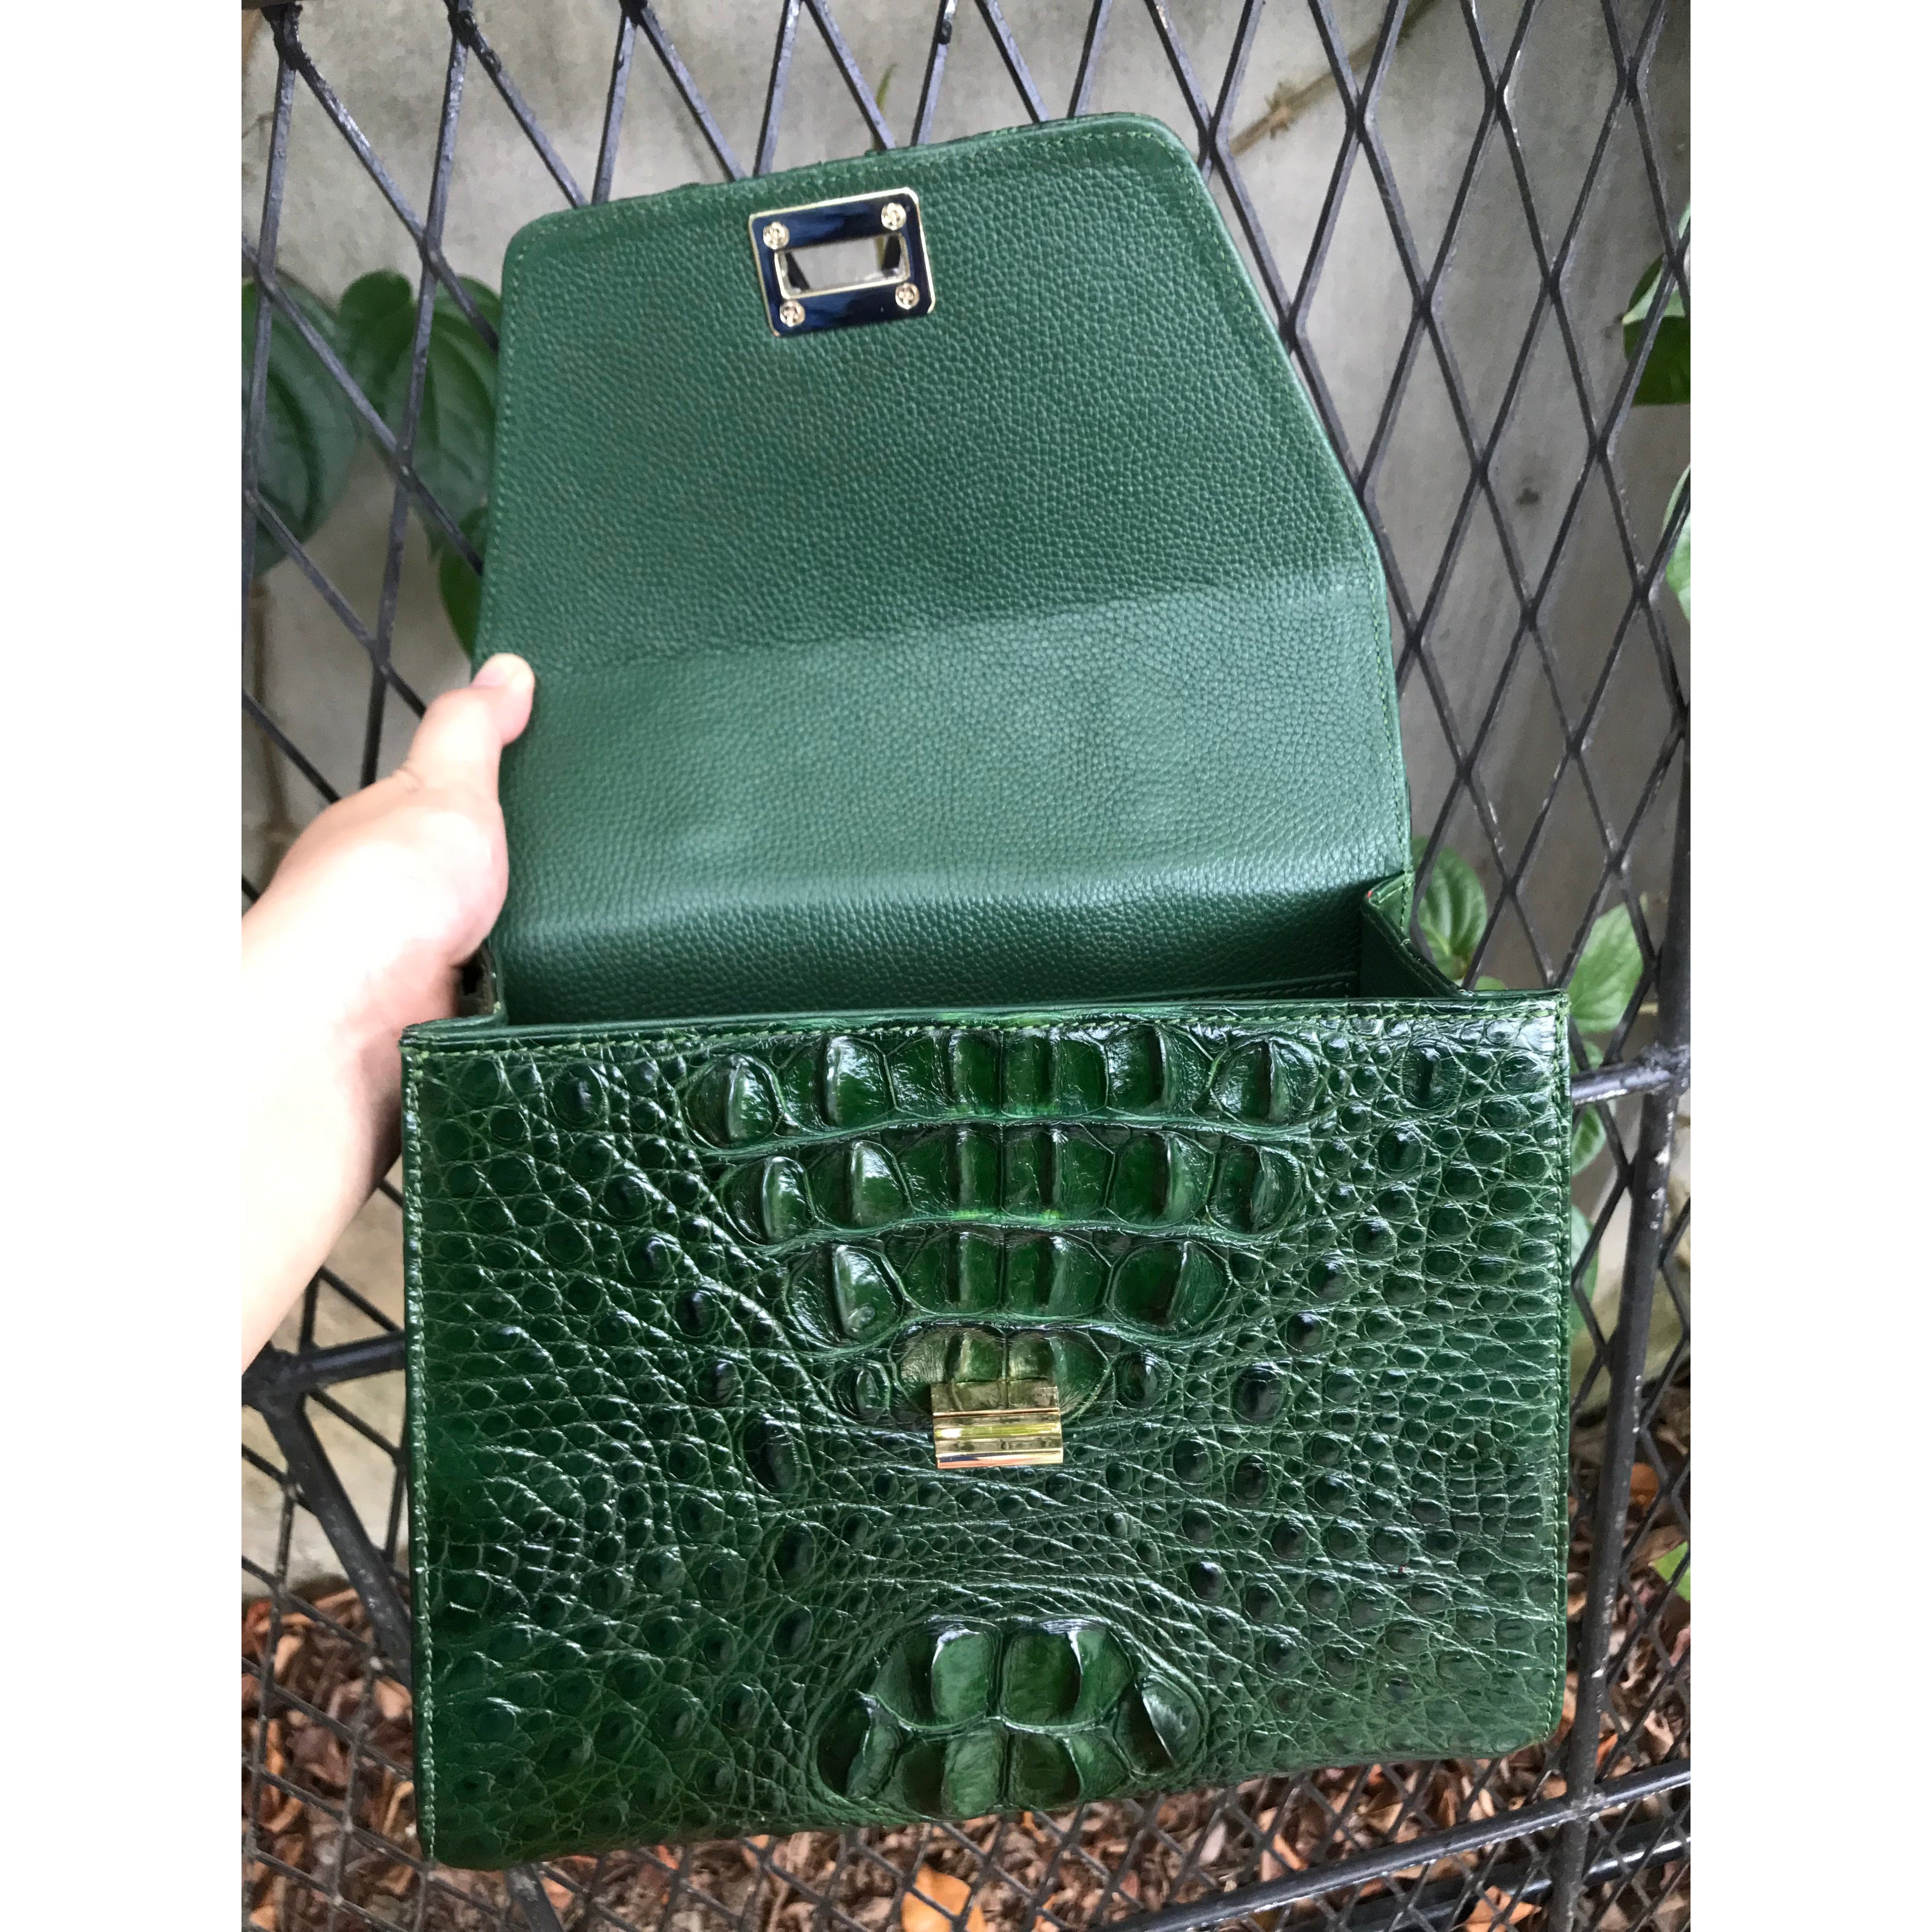 Cute Lladies Mini Crossbody Purse Green Shoulder Bag – igemstonejewelry